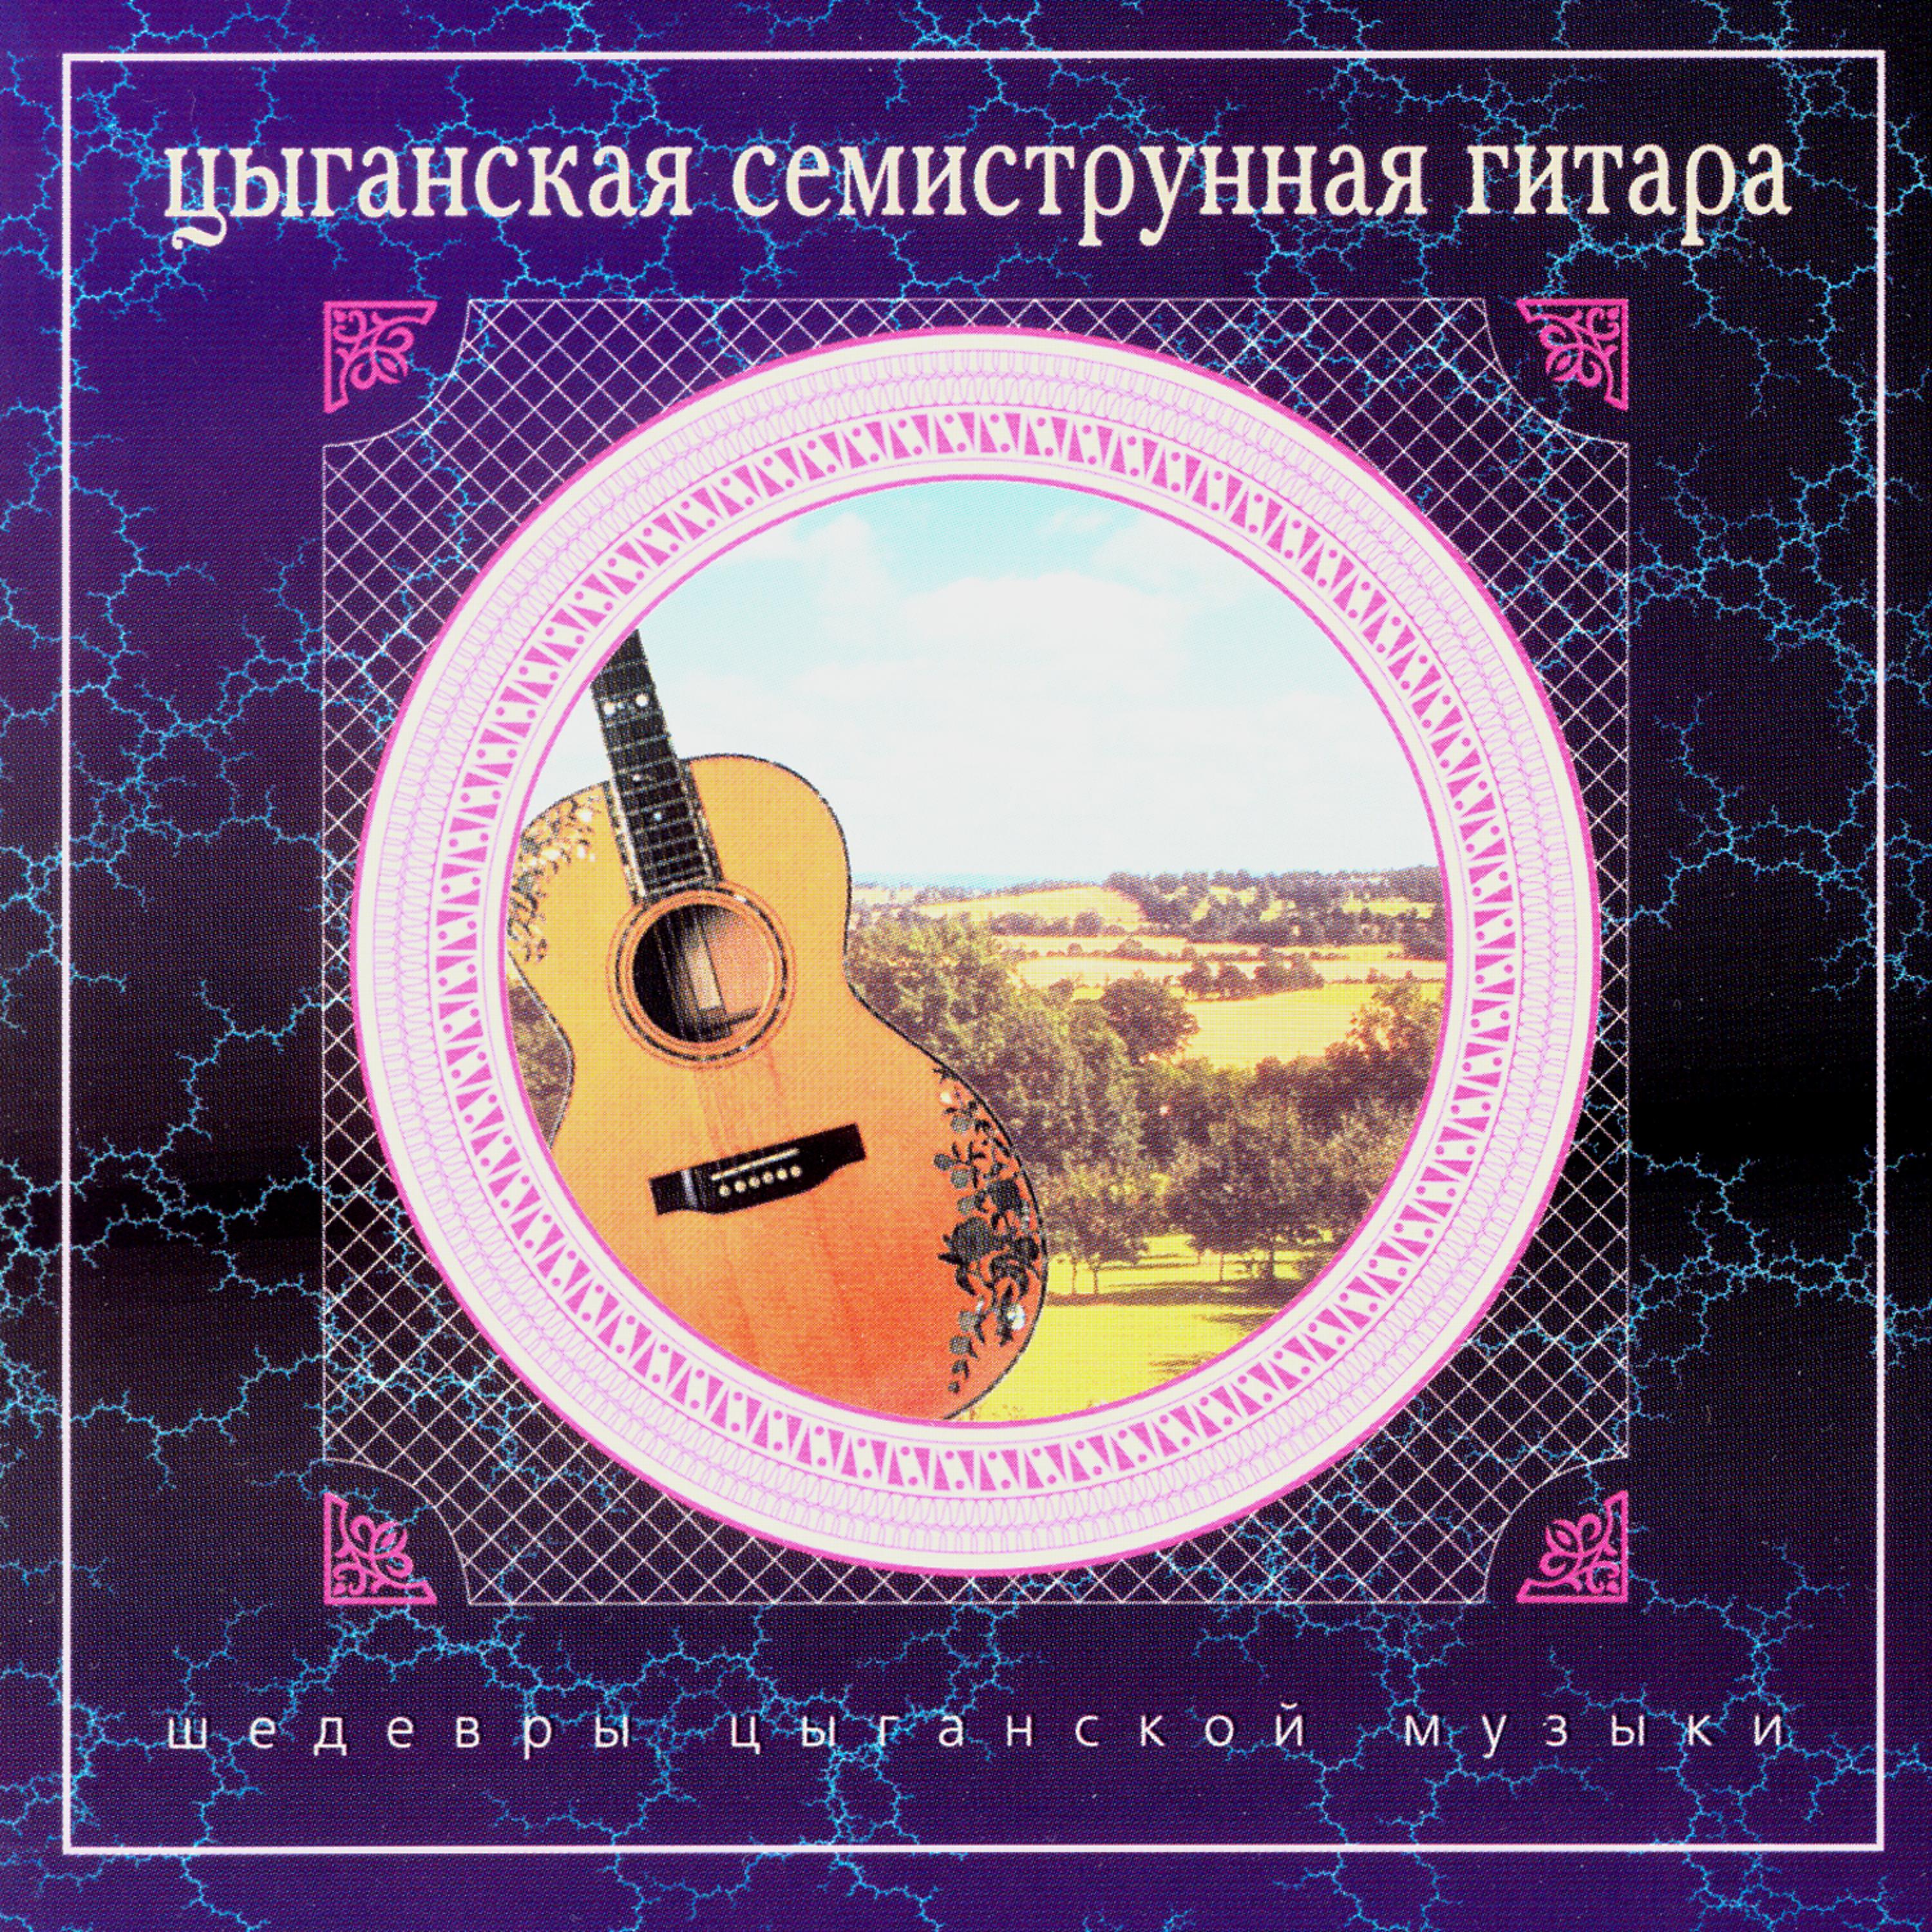 Постер альбома Шедевры цыганской музыки. Цыганская семиструнная гитара